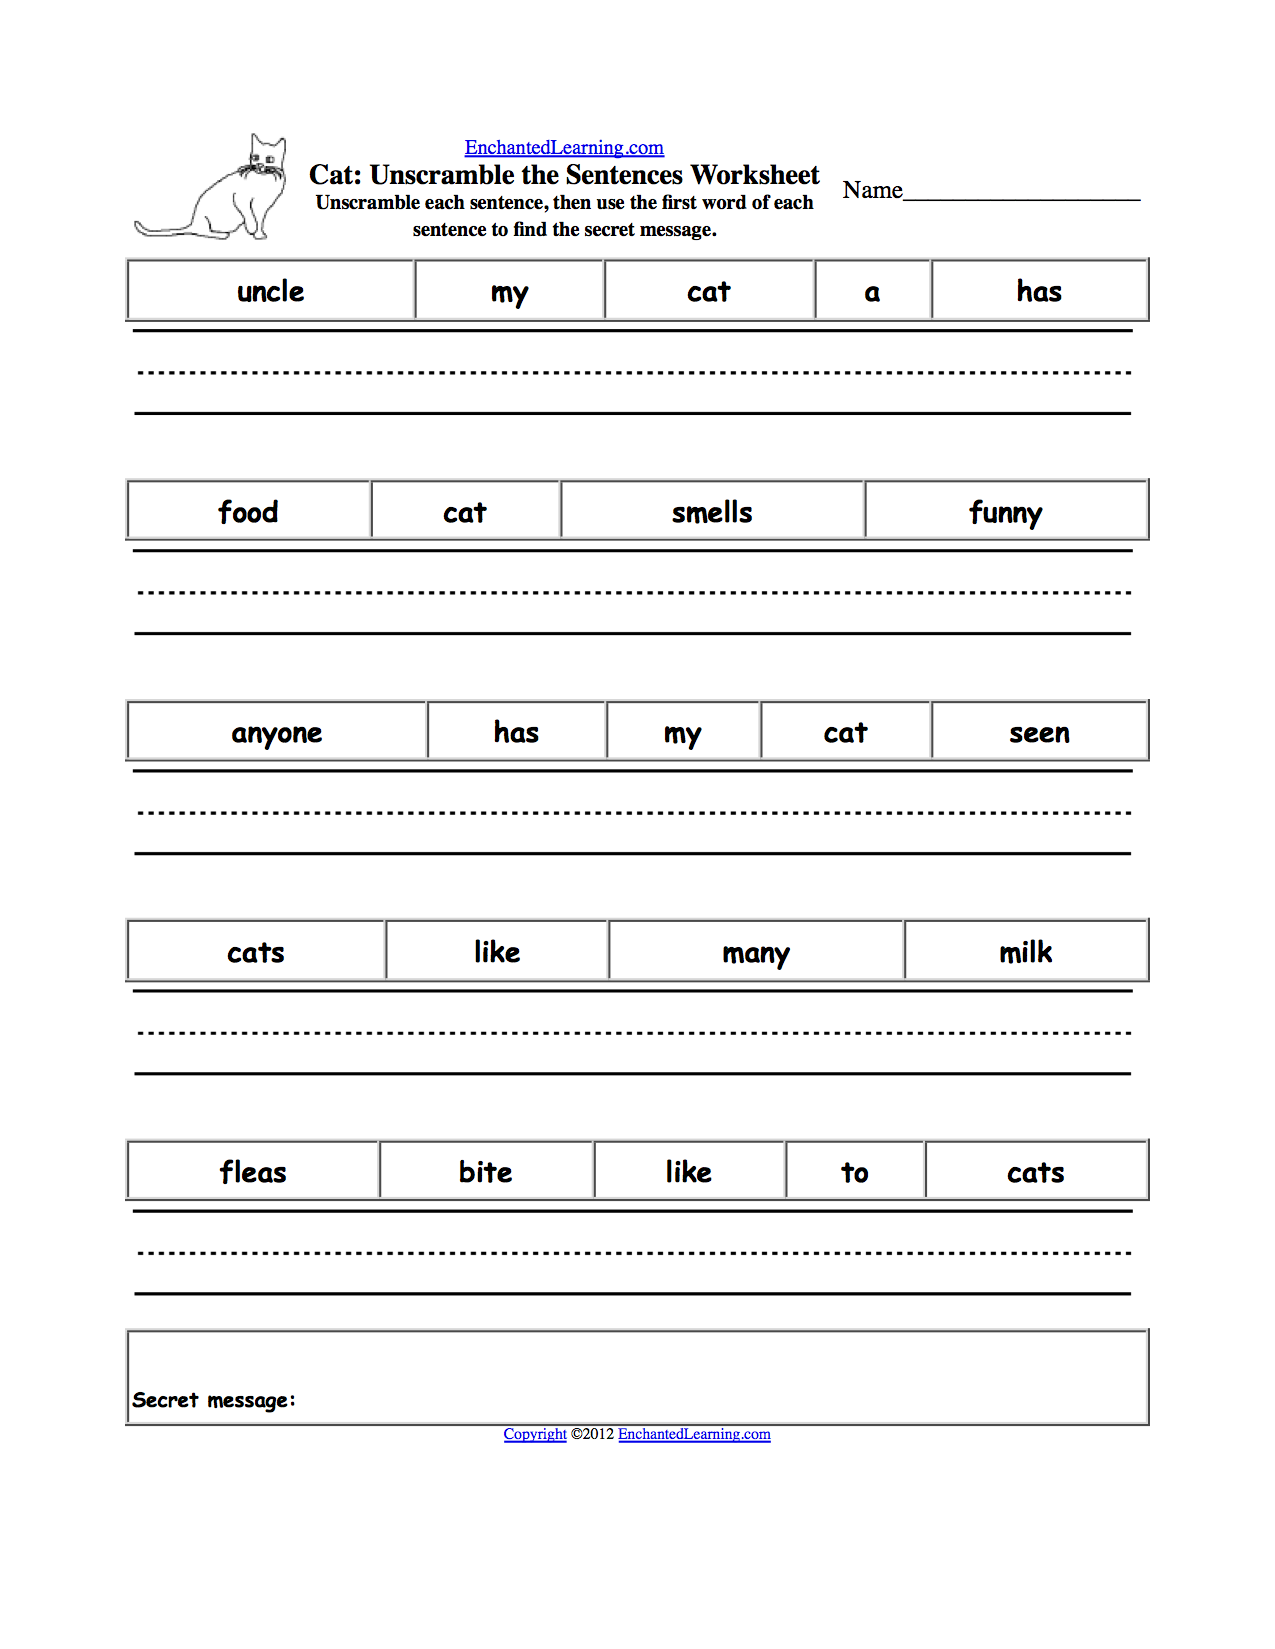 Sentence Worksheets Image